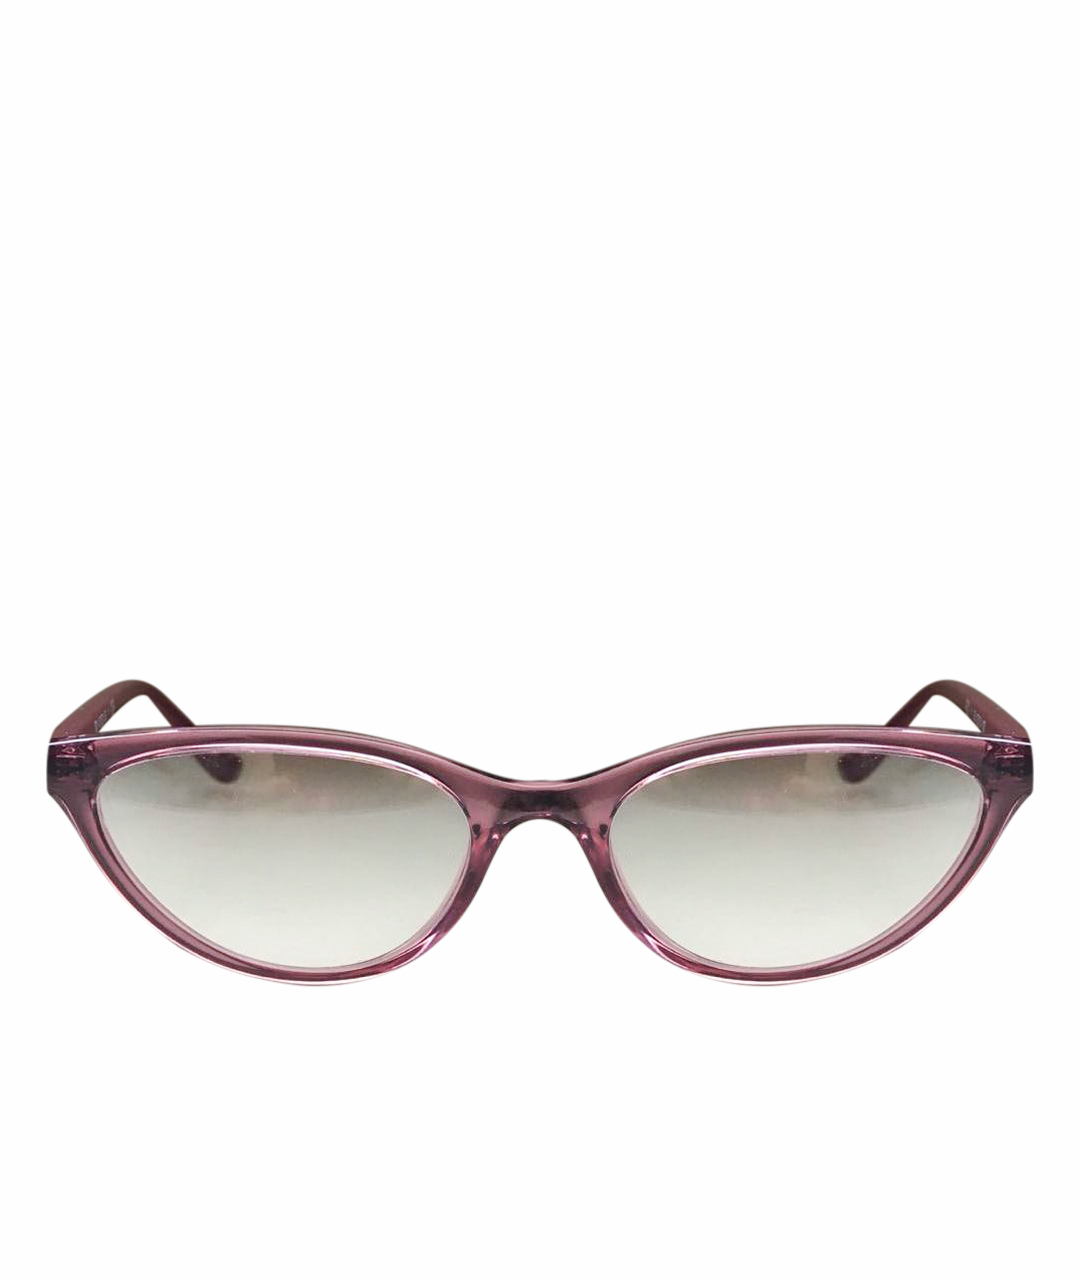 VOGUE EYEWEAR Розовые пластиковые солнцезащитные очки, фото 1